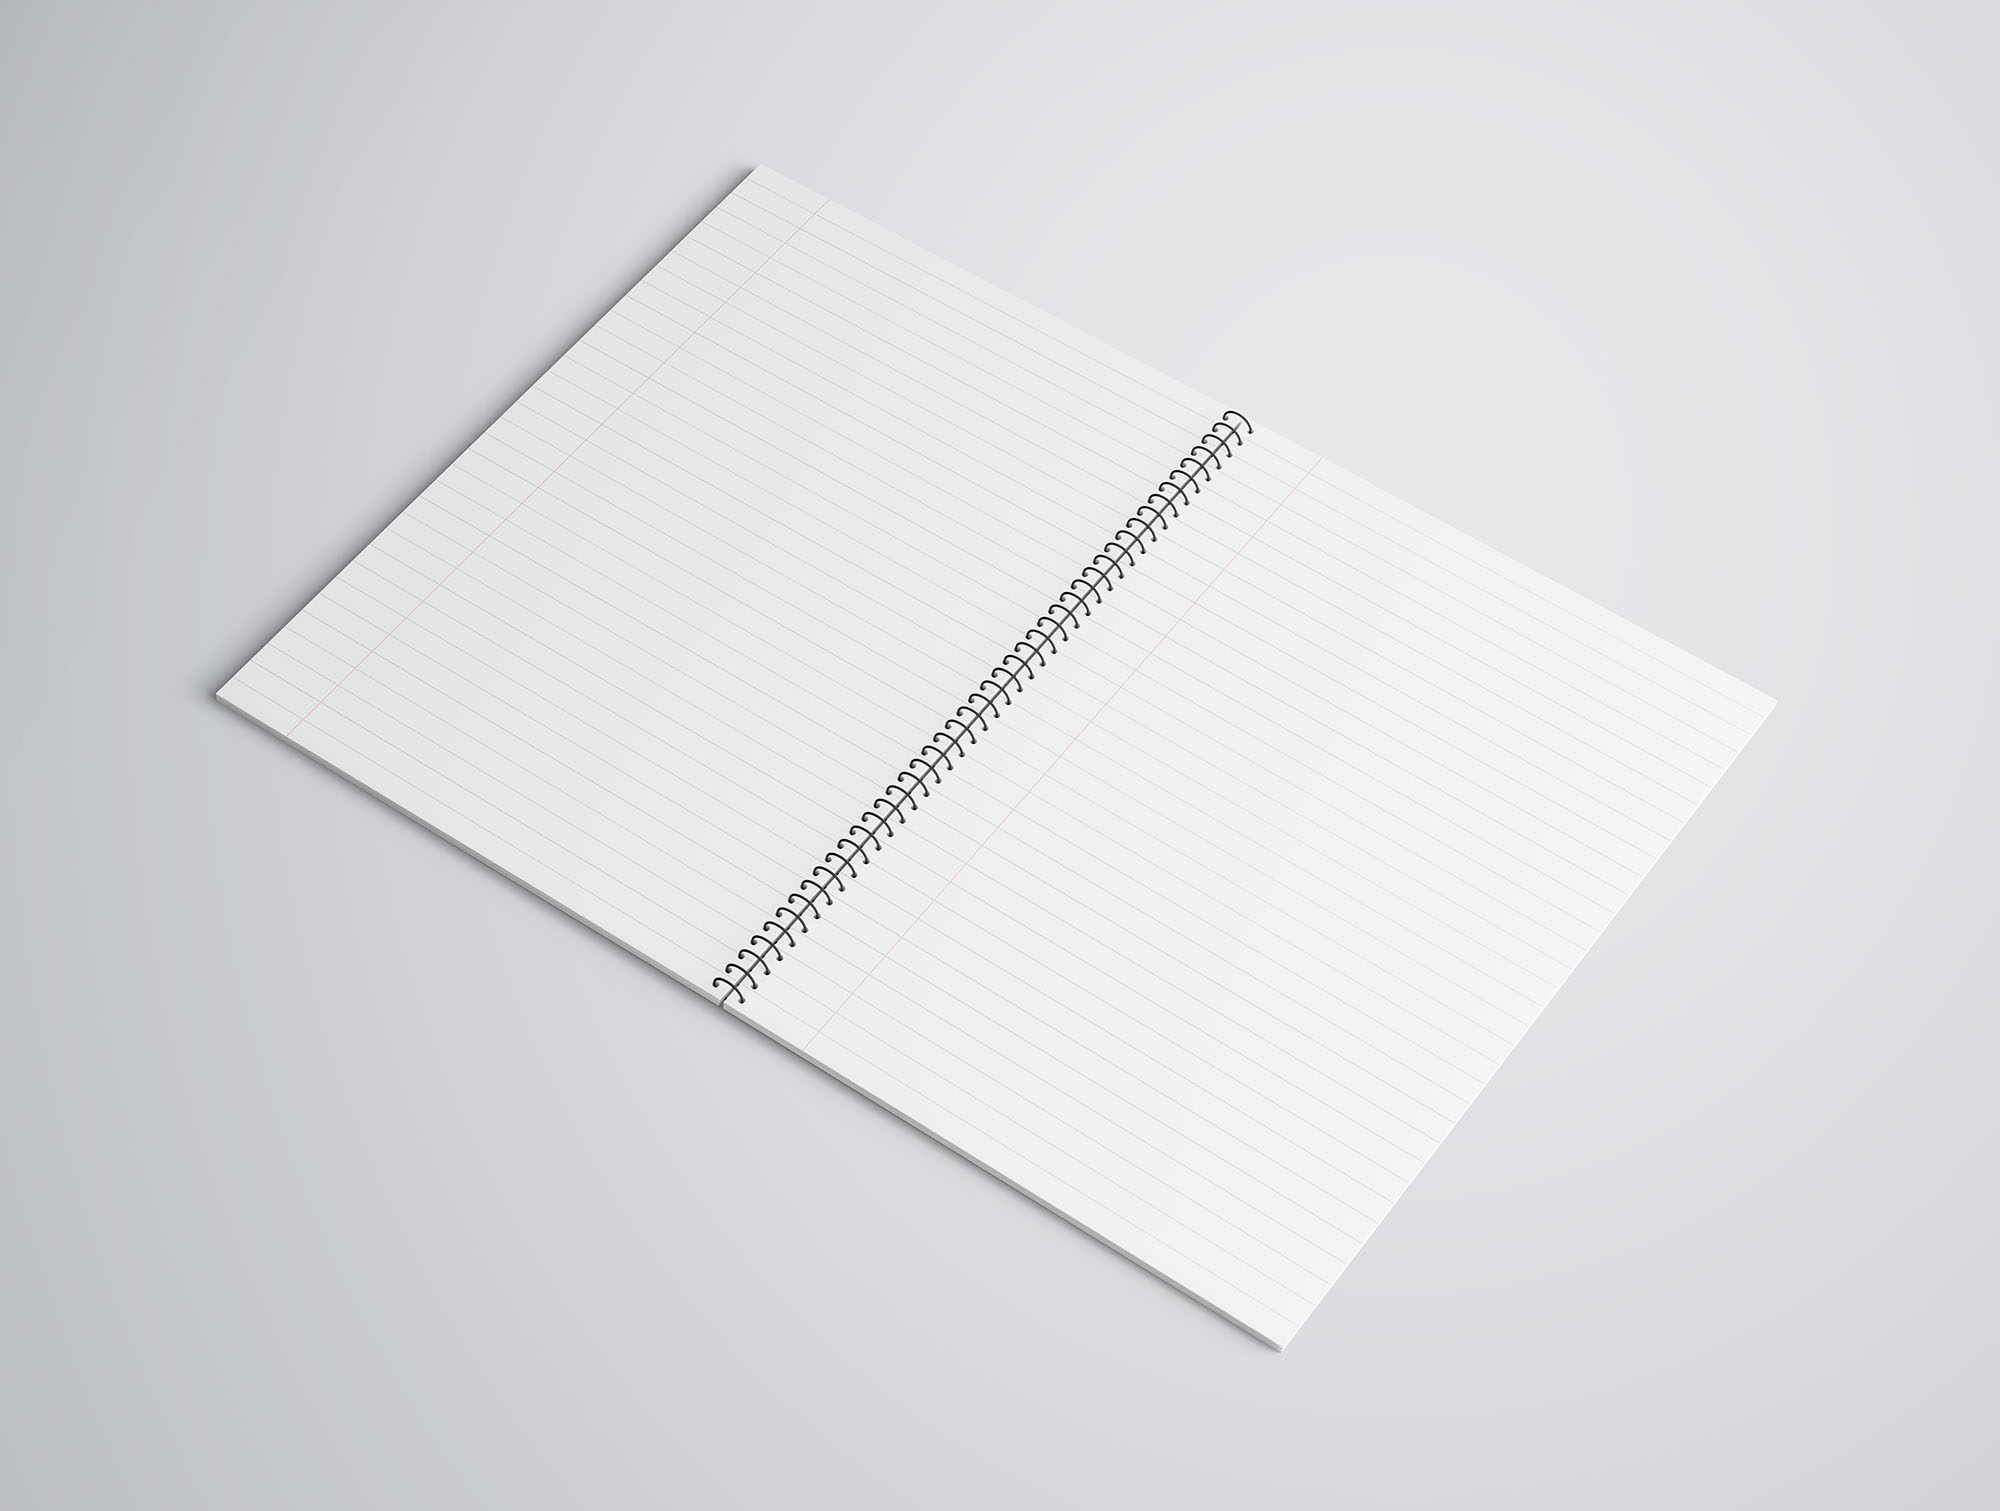 精致的A4笔记本样机 Exquisite A4 Notebook Prototype插图1